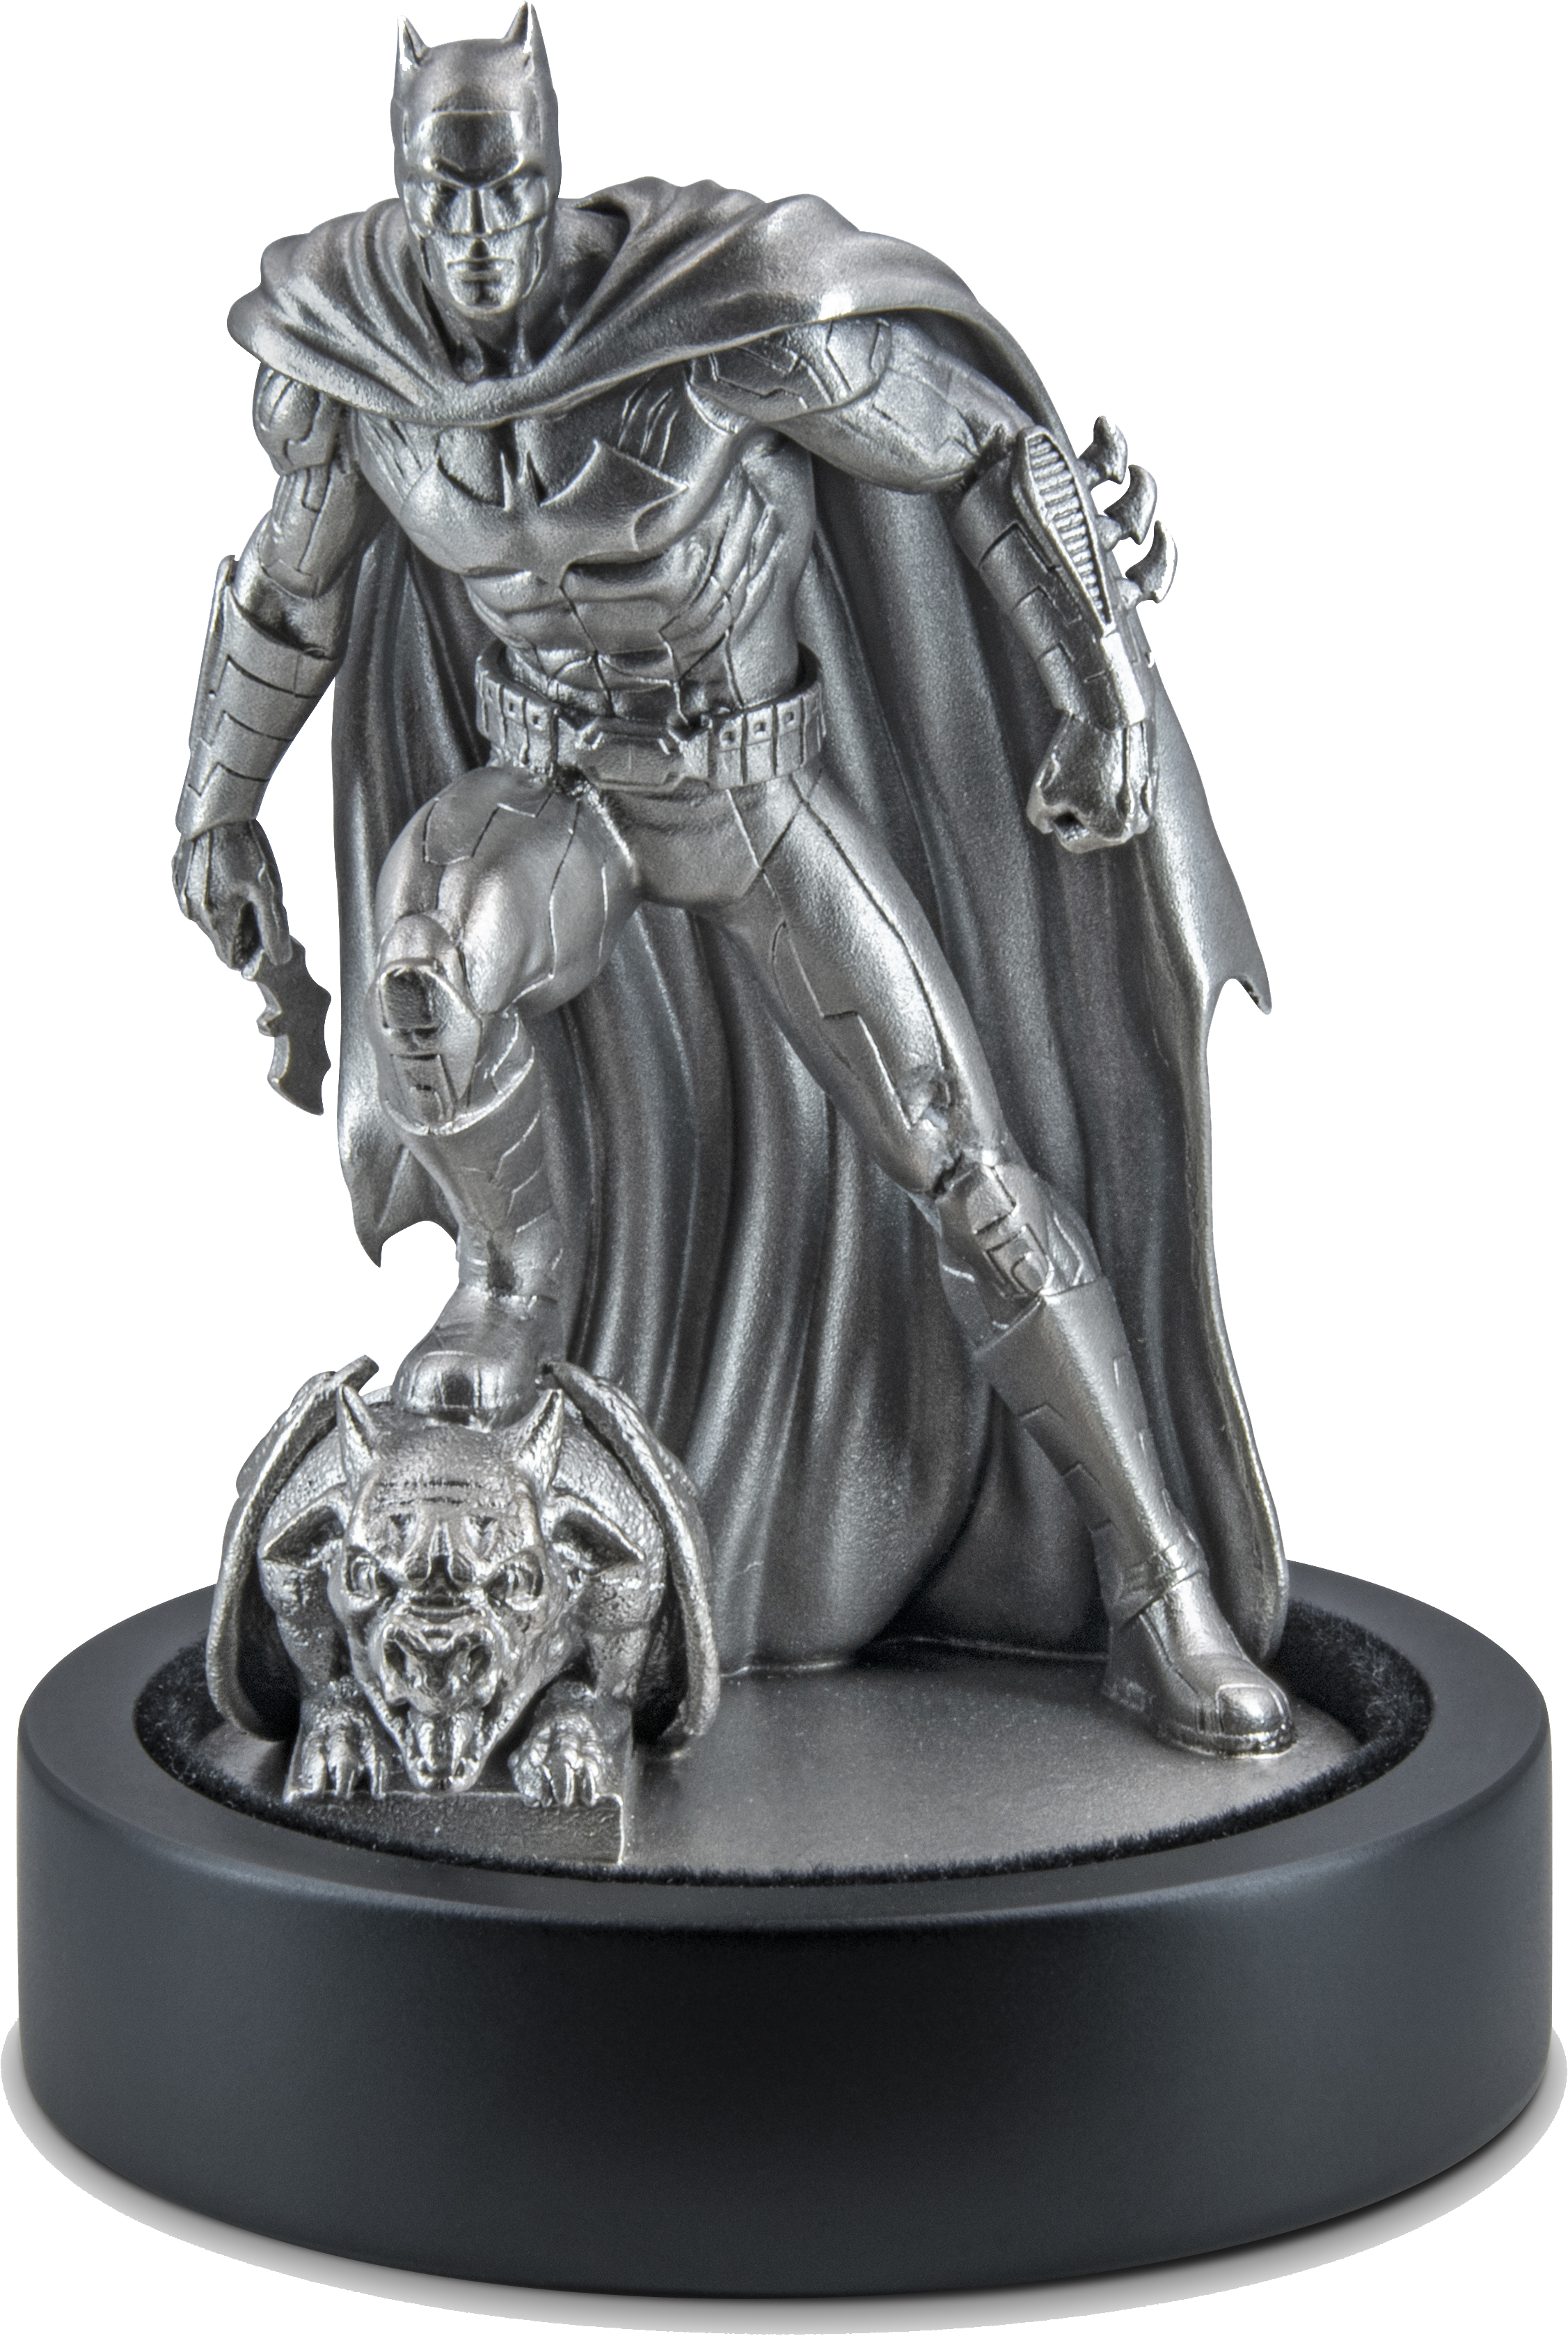 The Dark KnightTM offiziell gewürdigt als sensationelle Silberminatur